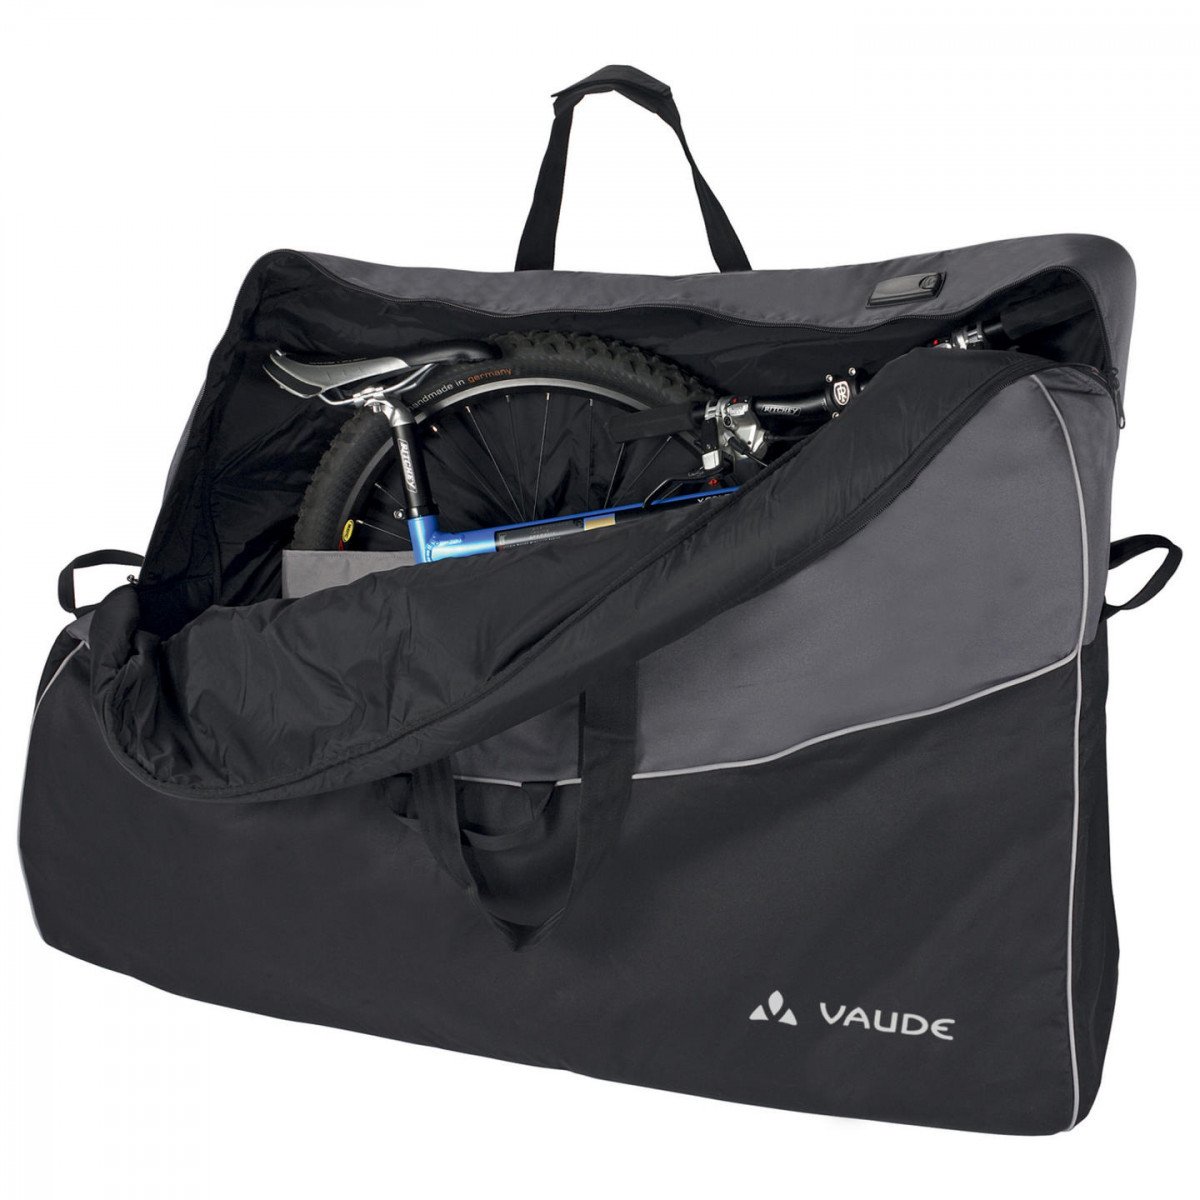 Велосипедная сумка VAUDE Big Bike Bag Pro сумка транспортировочная, размеры: 85x130x28см, 15257 коврик для мыши gembird mp game14 размеры 250х200х3 мм